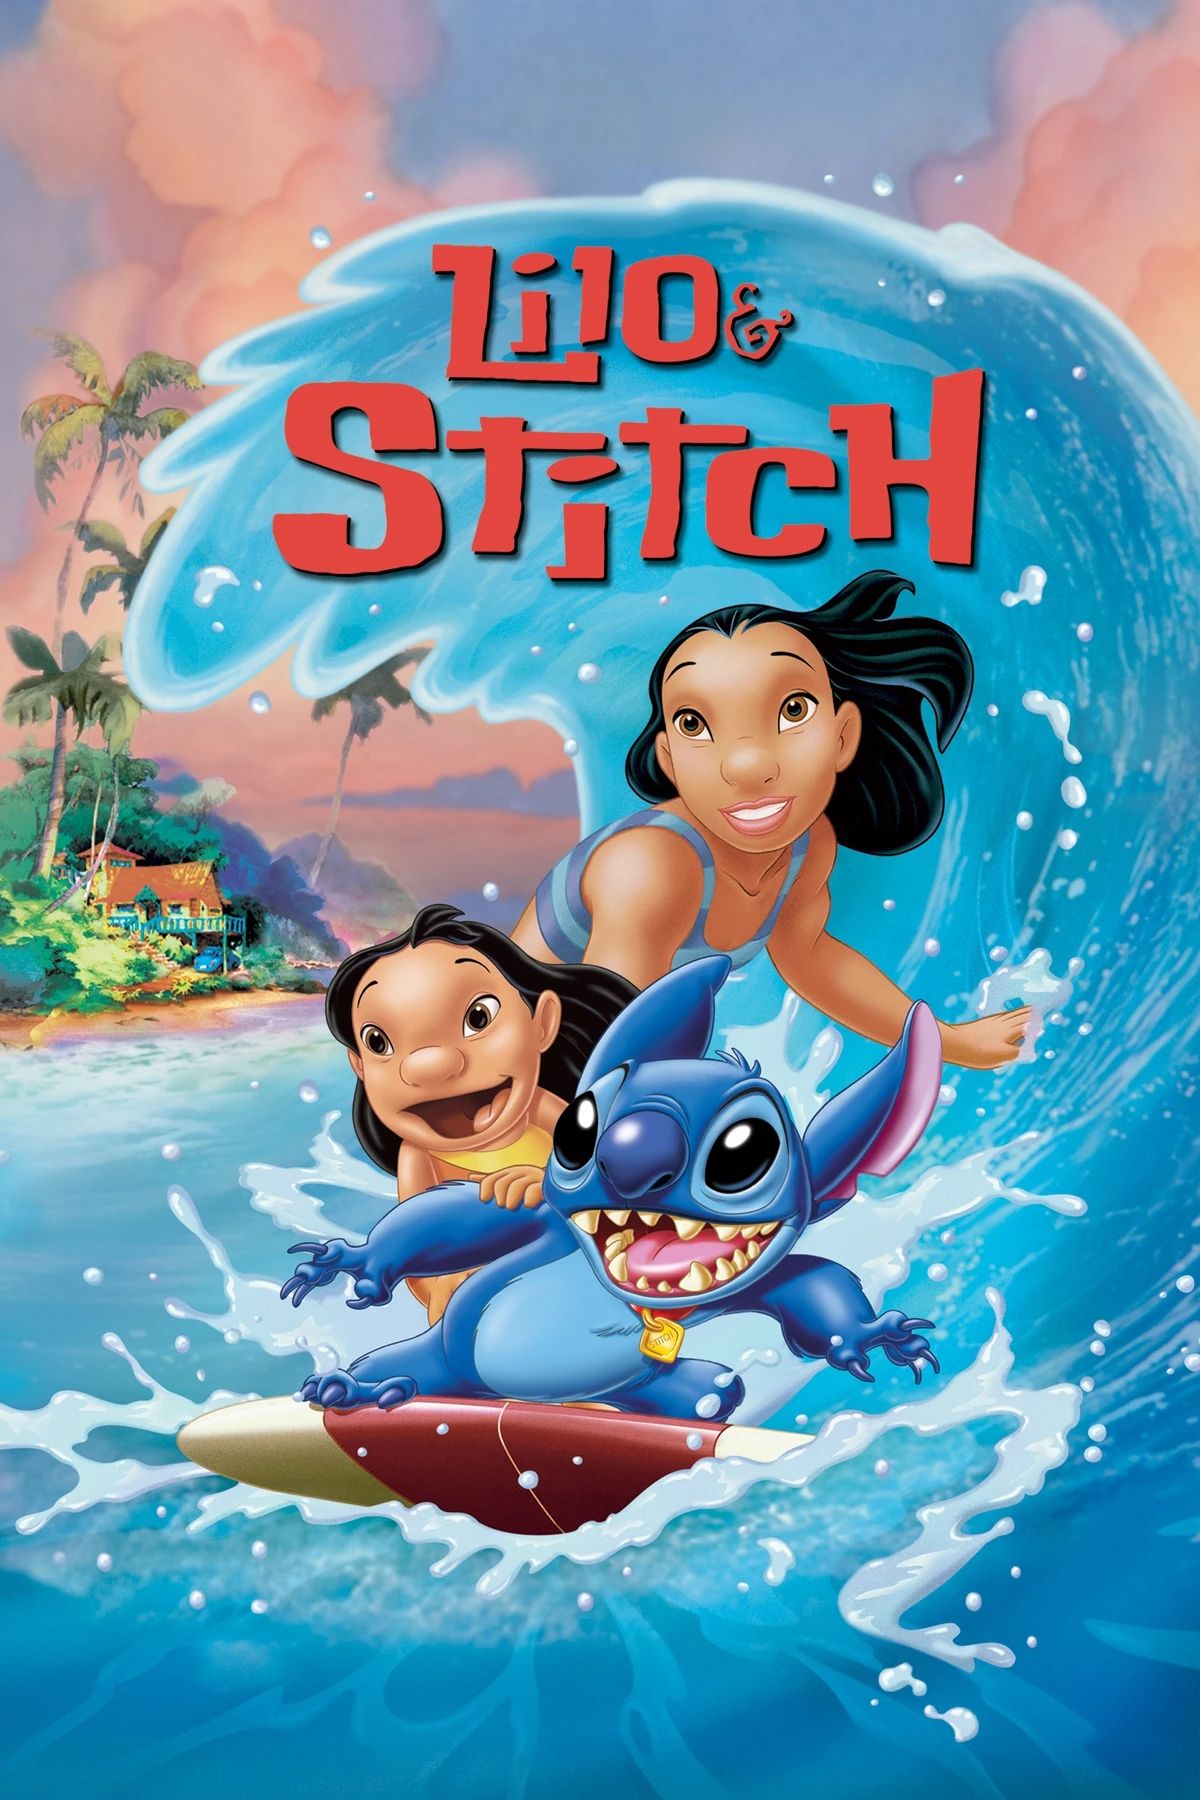 Lilo & Stitch” Put Sisterhood Over Romance Way Before “Frozen